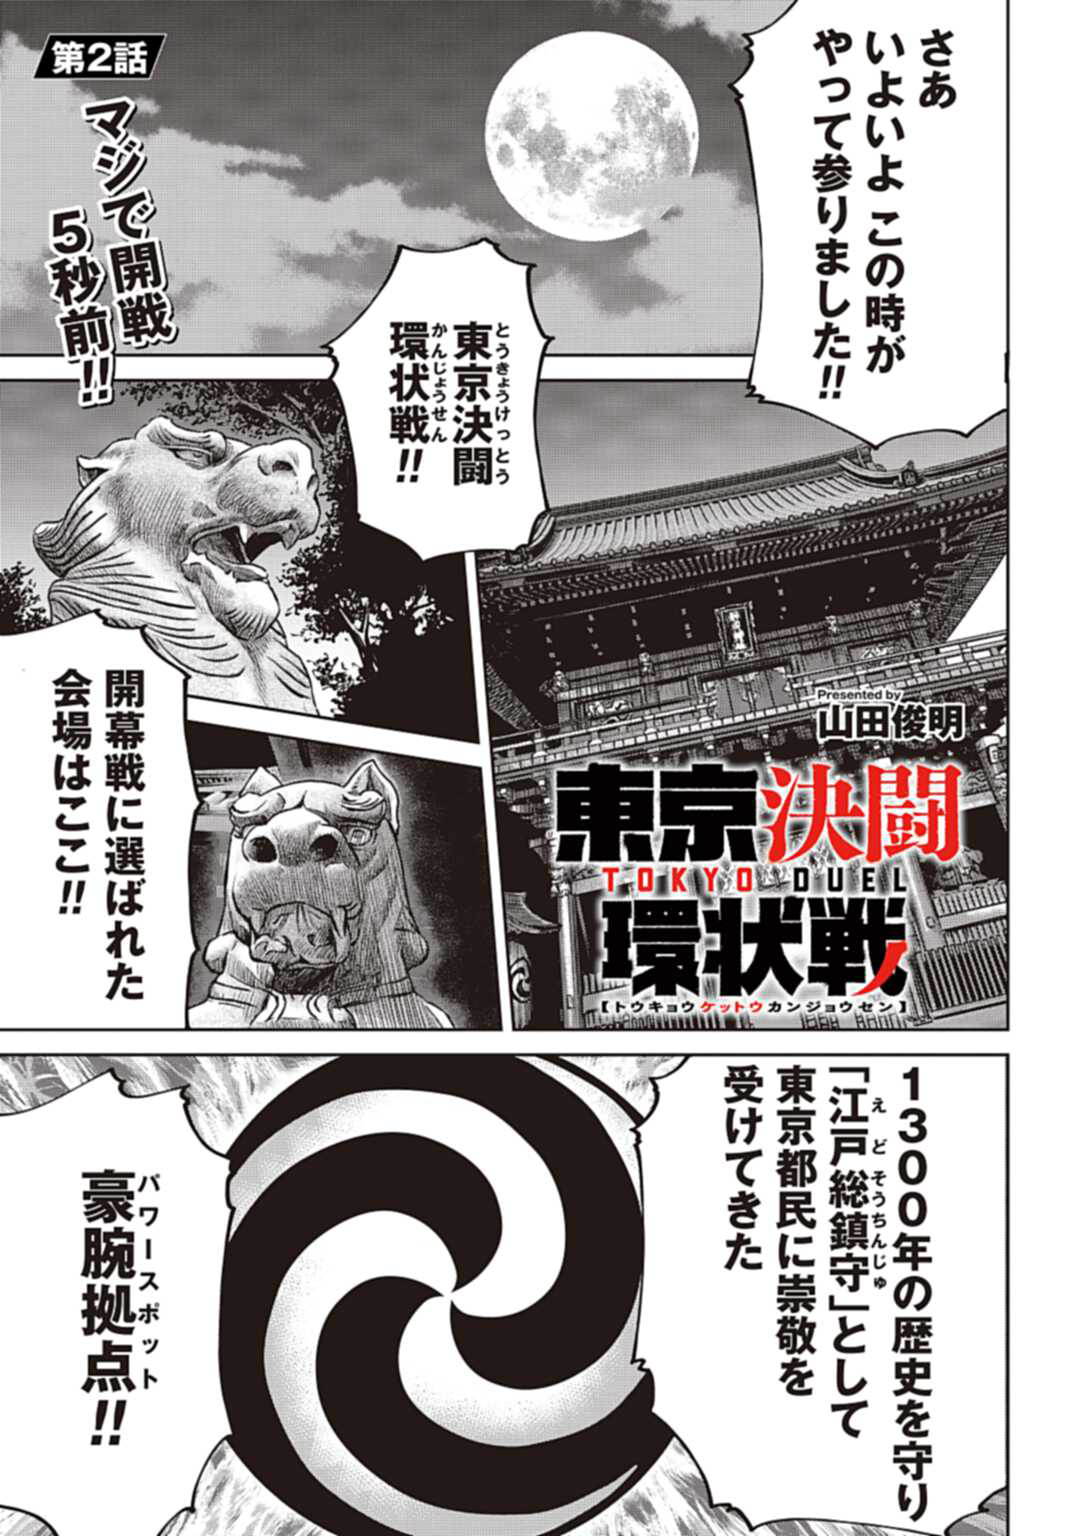 Chapter 2 Tokyo Duel Wiki Fandom